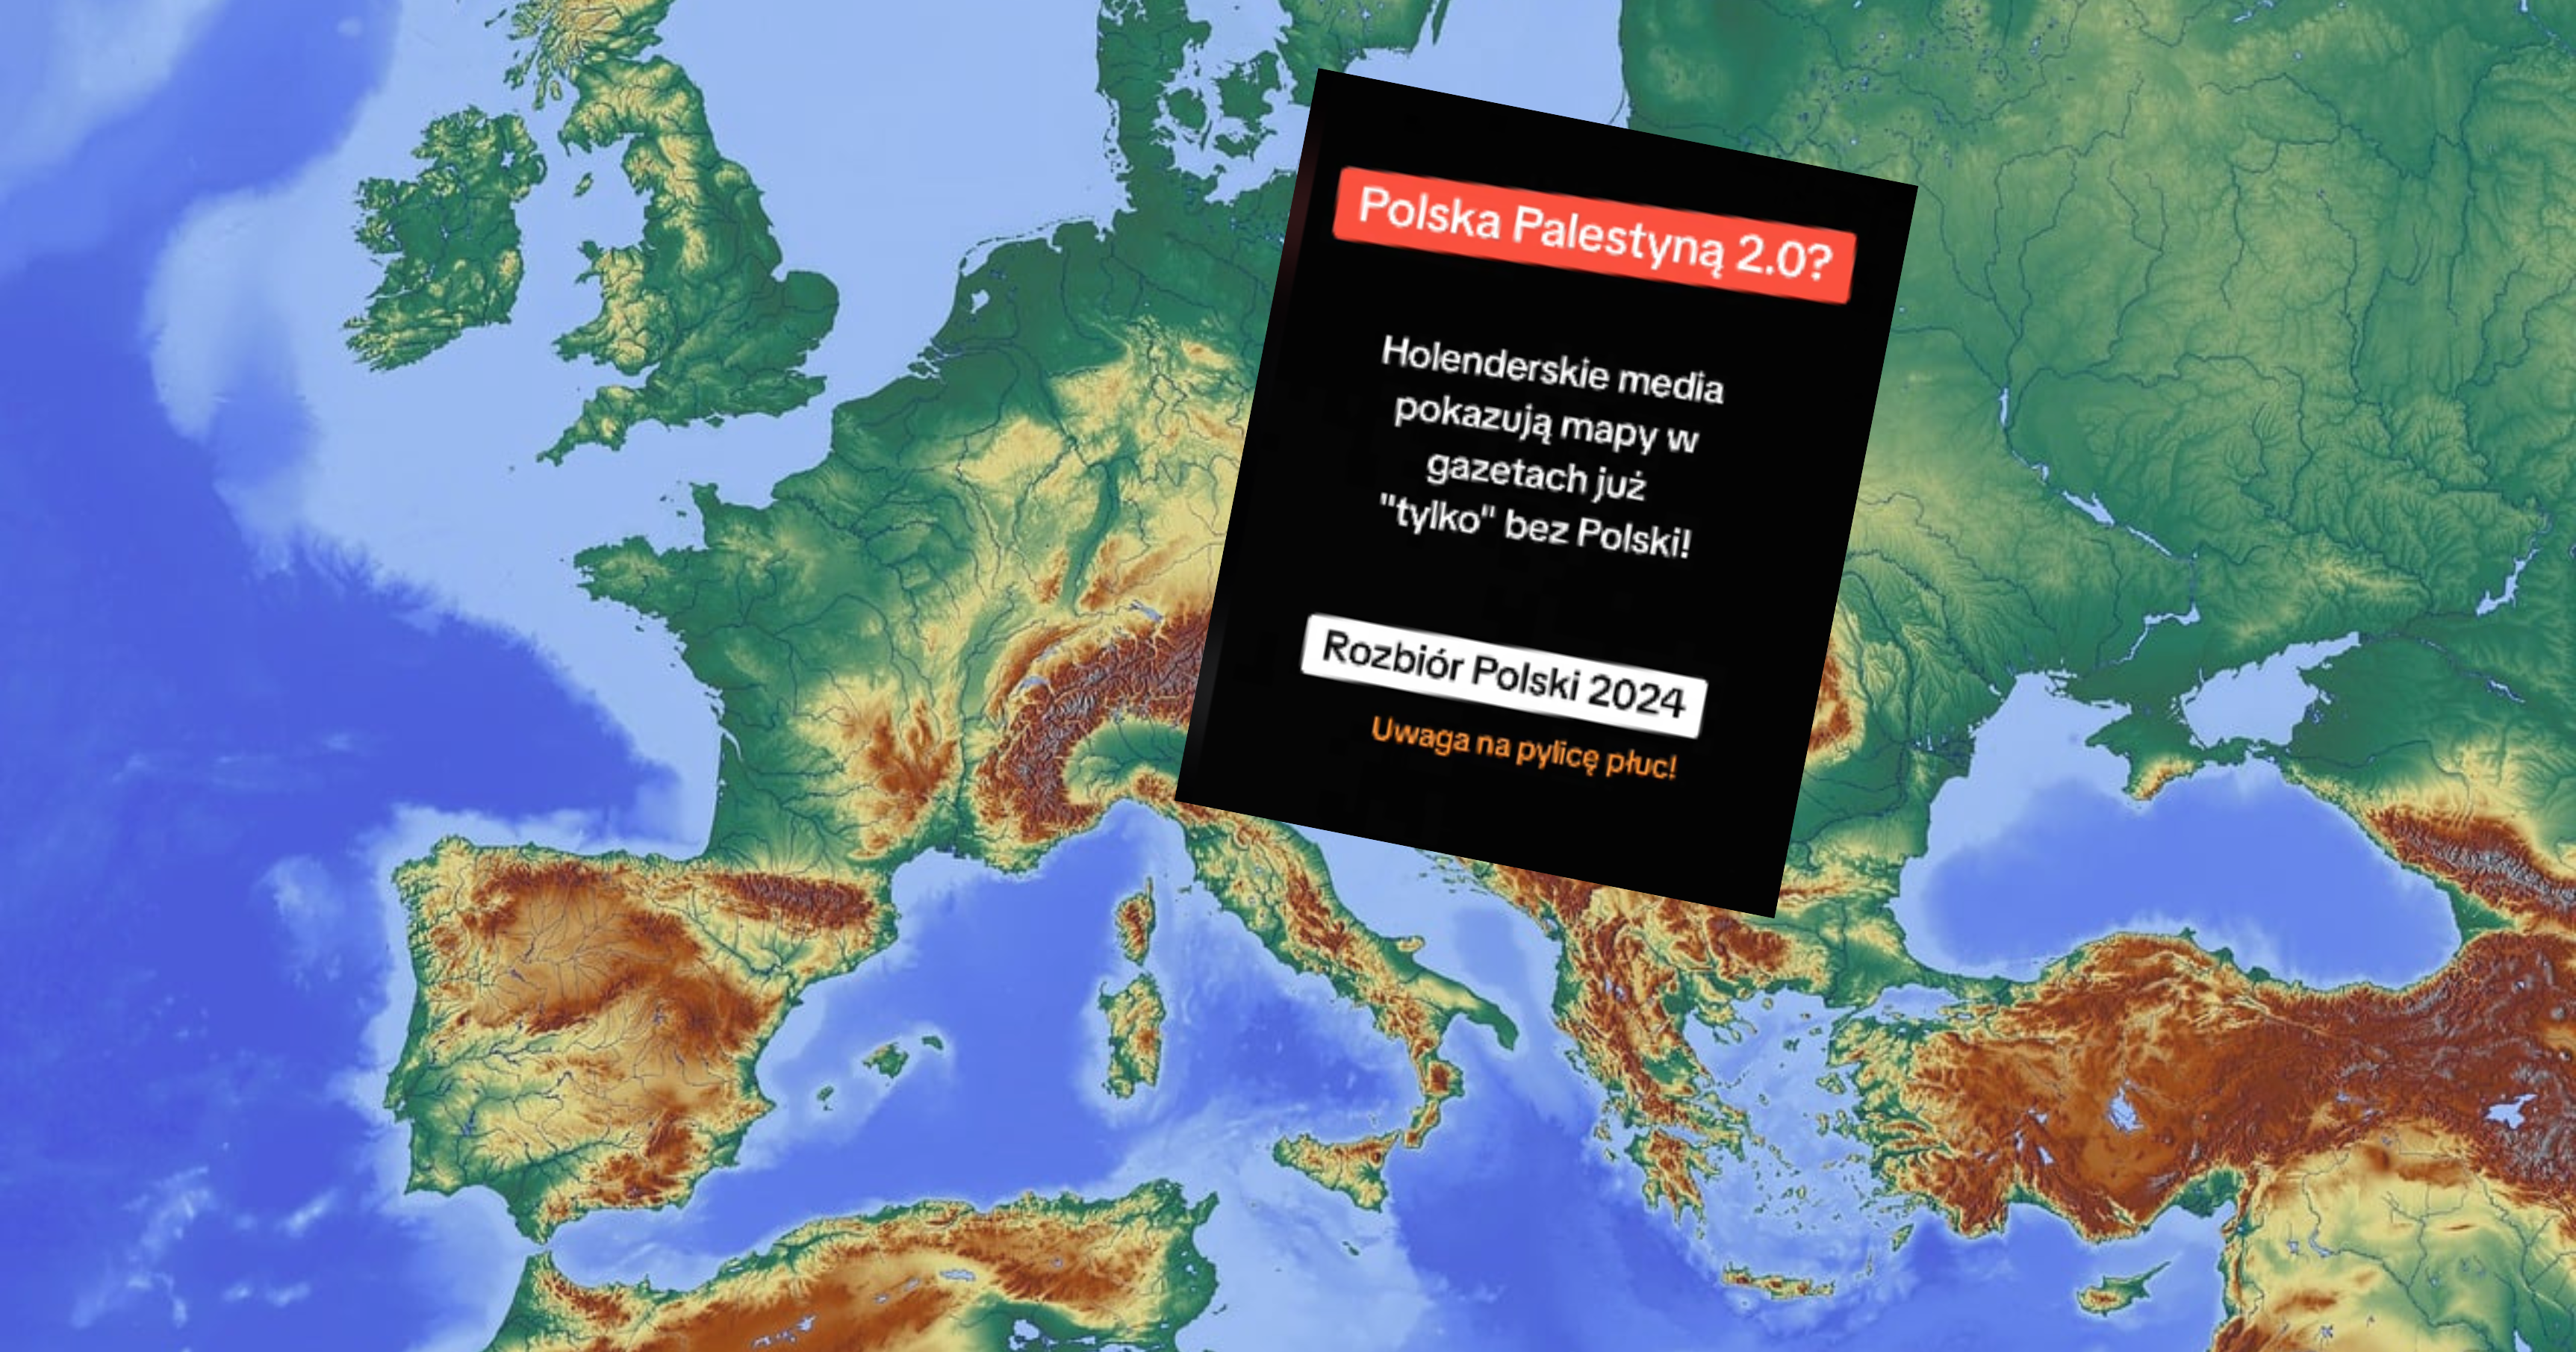 Polska znika z map w Europie? To teoria spiskowa